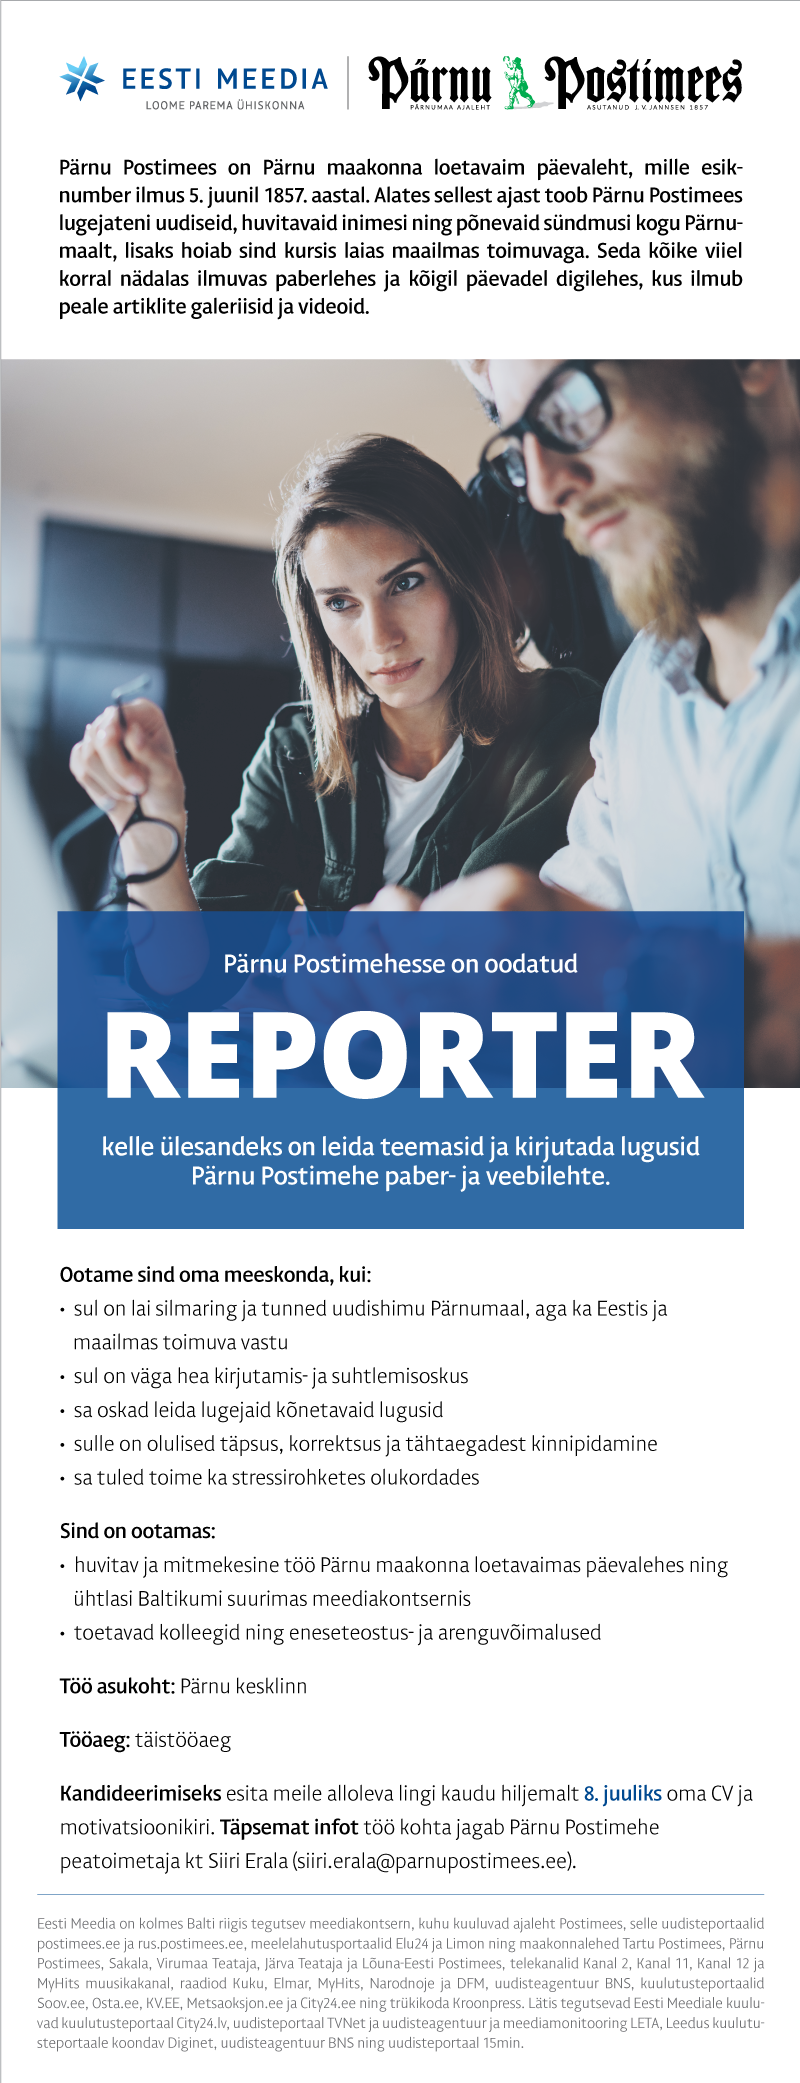 Eesti Meedia Pärnu Postimehe reporter